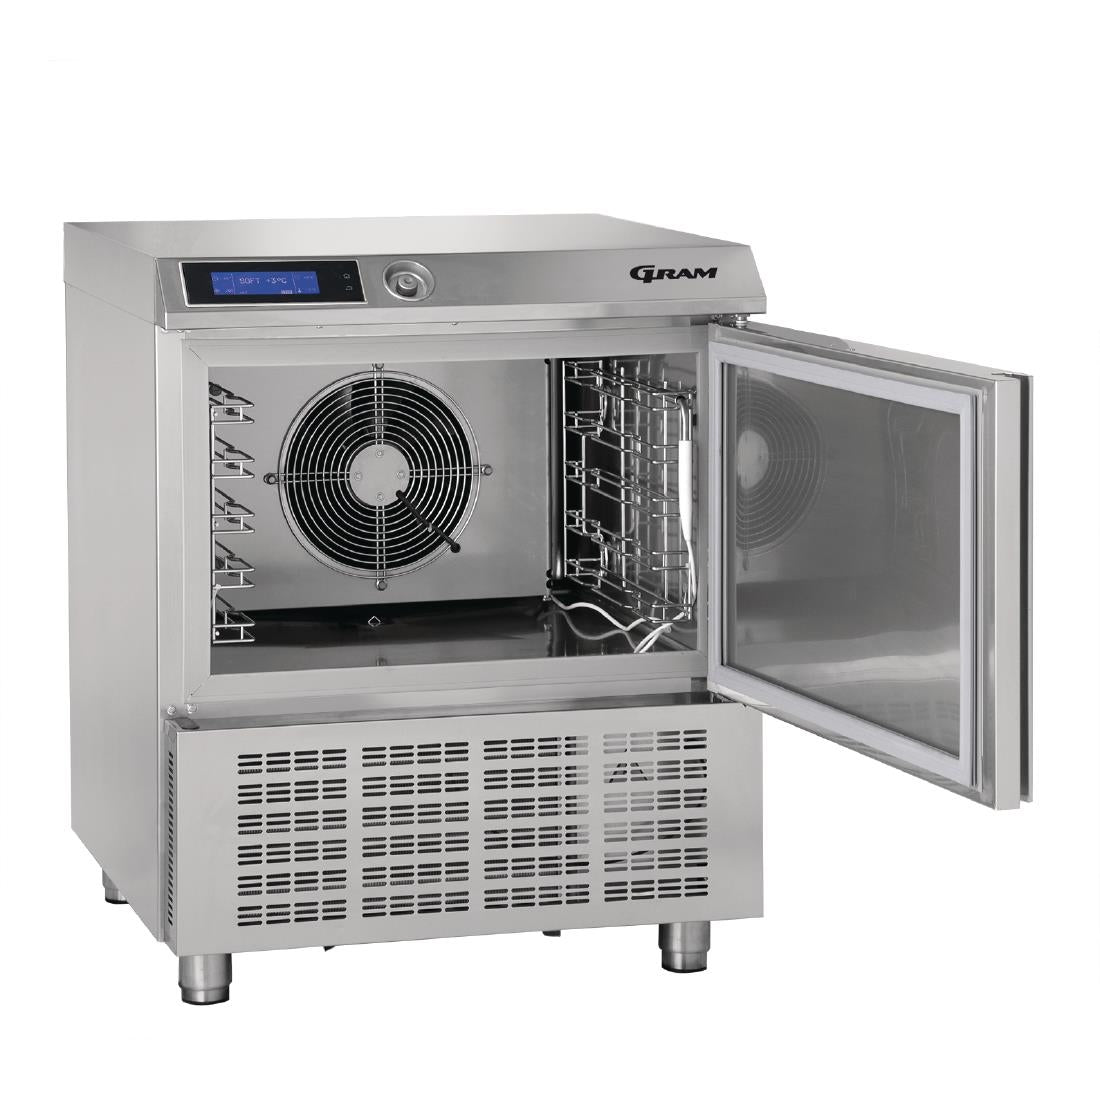 DA121 Gram 22kg/13kg Blast Chiller/Freezer KPS 21 SH JD Catering Equipment Solutions Ltd